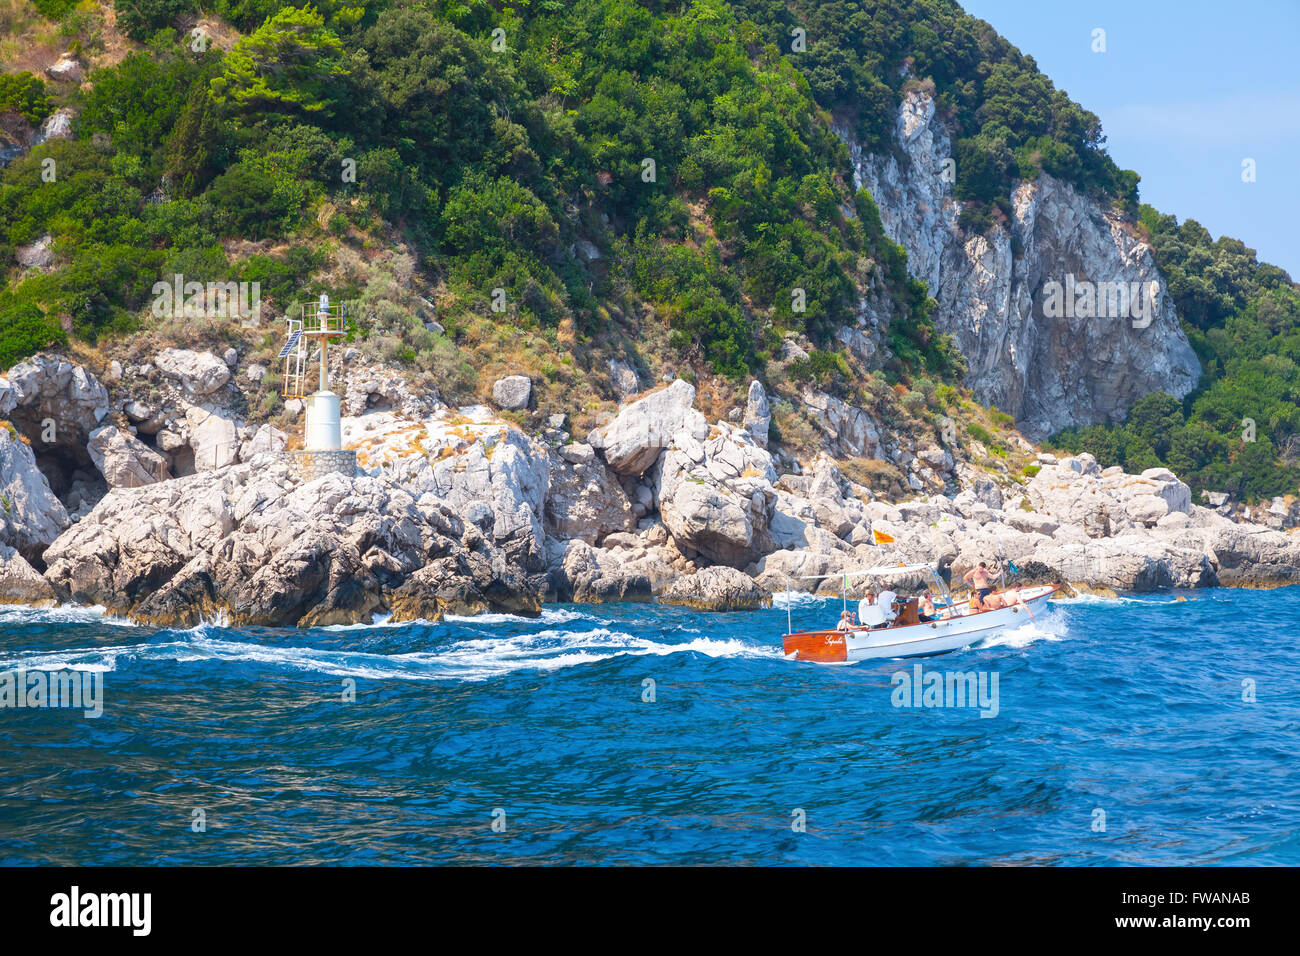 Capri, Italia - 14 agosto 2015: piccolo piacere motoscafo con turisti va vicino a rocce costiere di isola di Capri, Italia Foto Stock